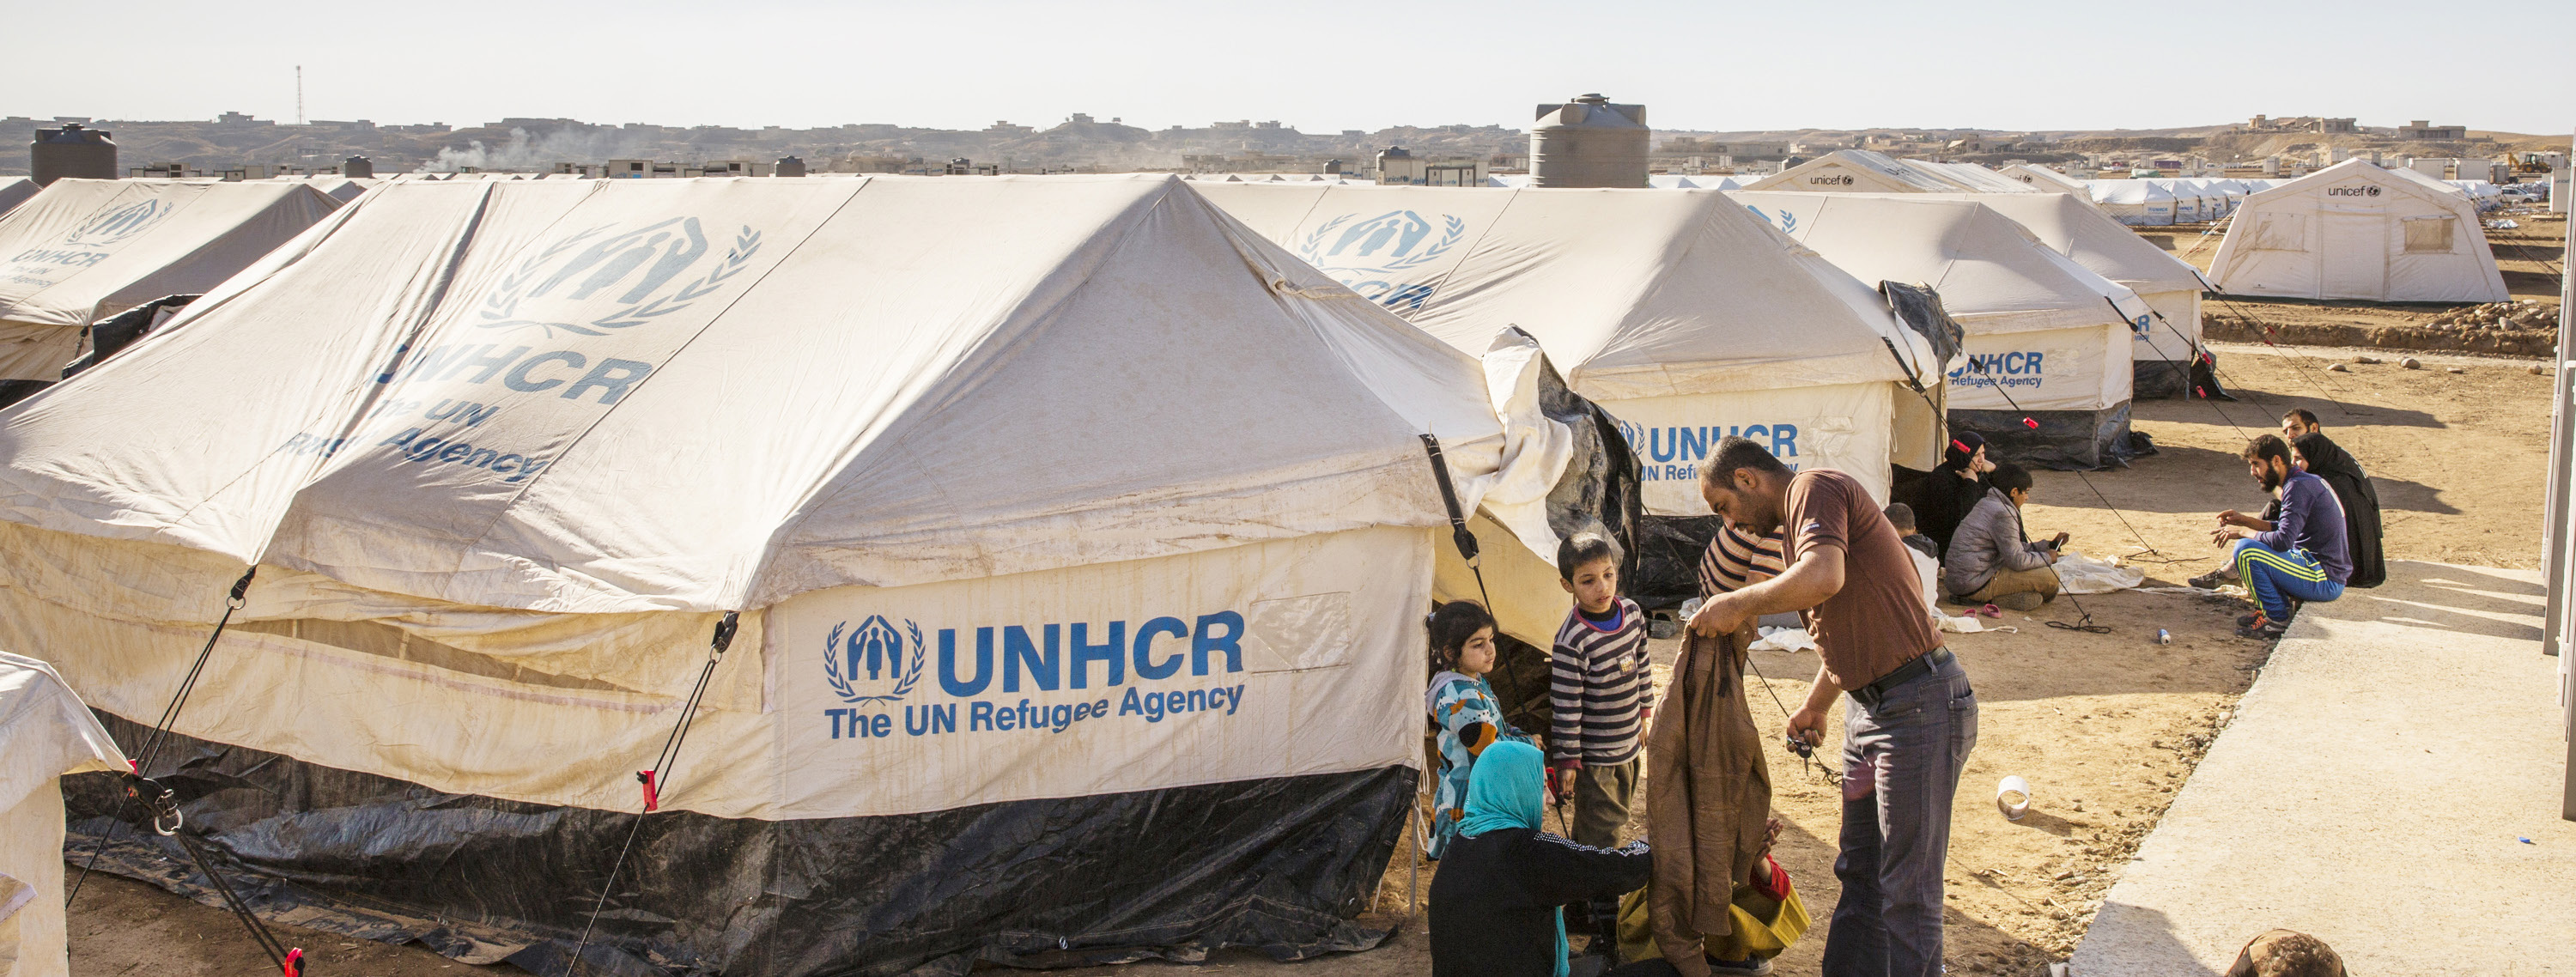 UNHCR/Ivor Prickett Antalet platser i olika länder ökar UNHCR planerar att presentera upp till 200 000 personer för vidarebosättning i olika länder under 2017.